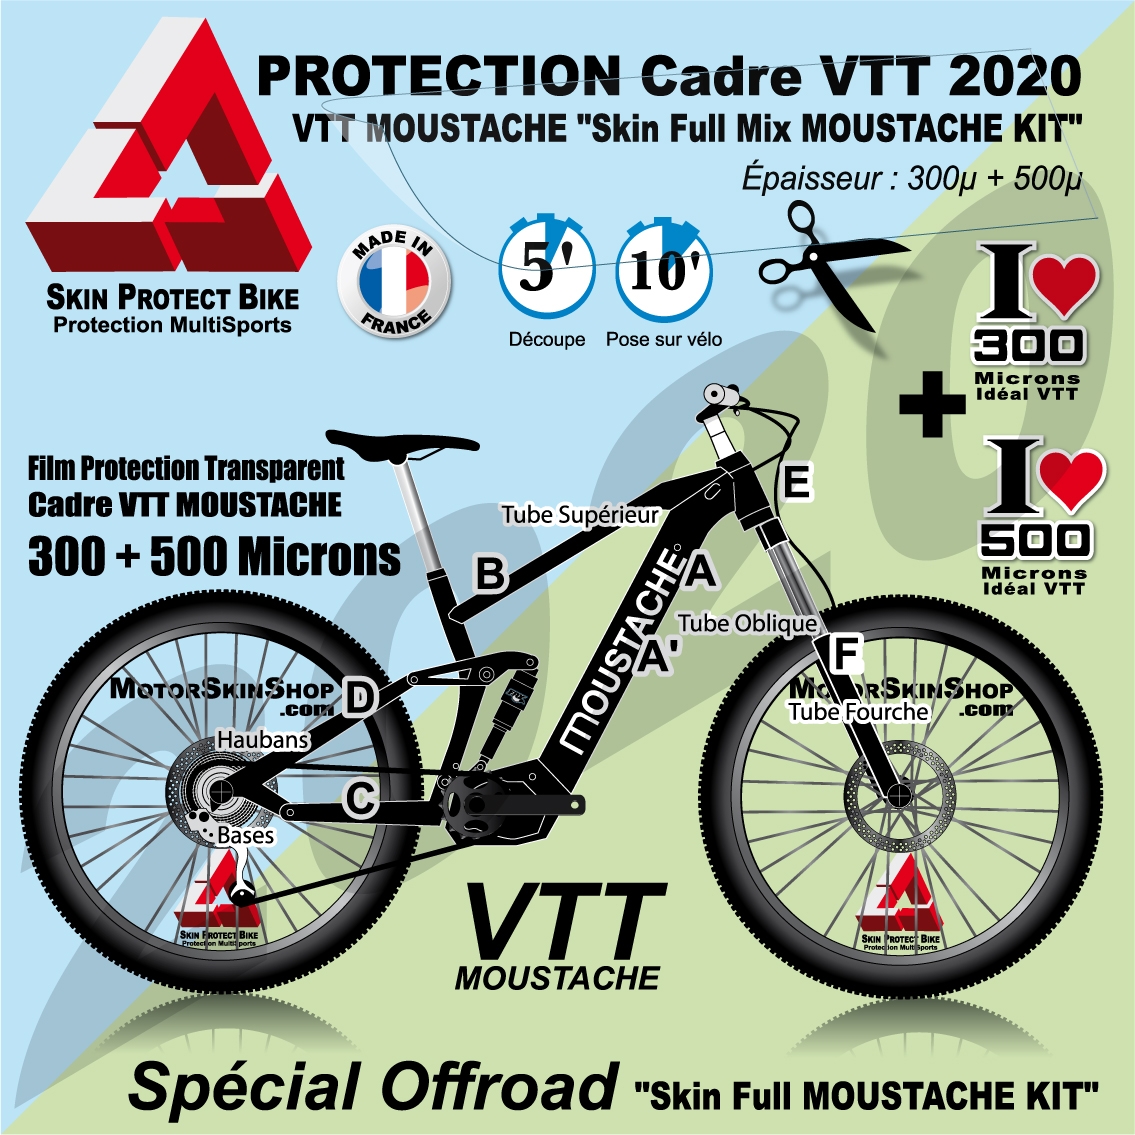 Stickers et protections VTT au meilleur prix